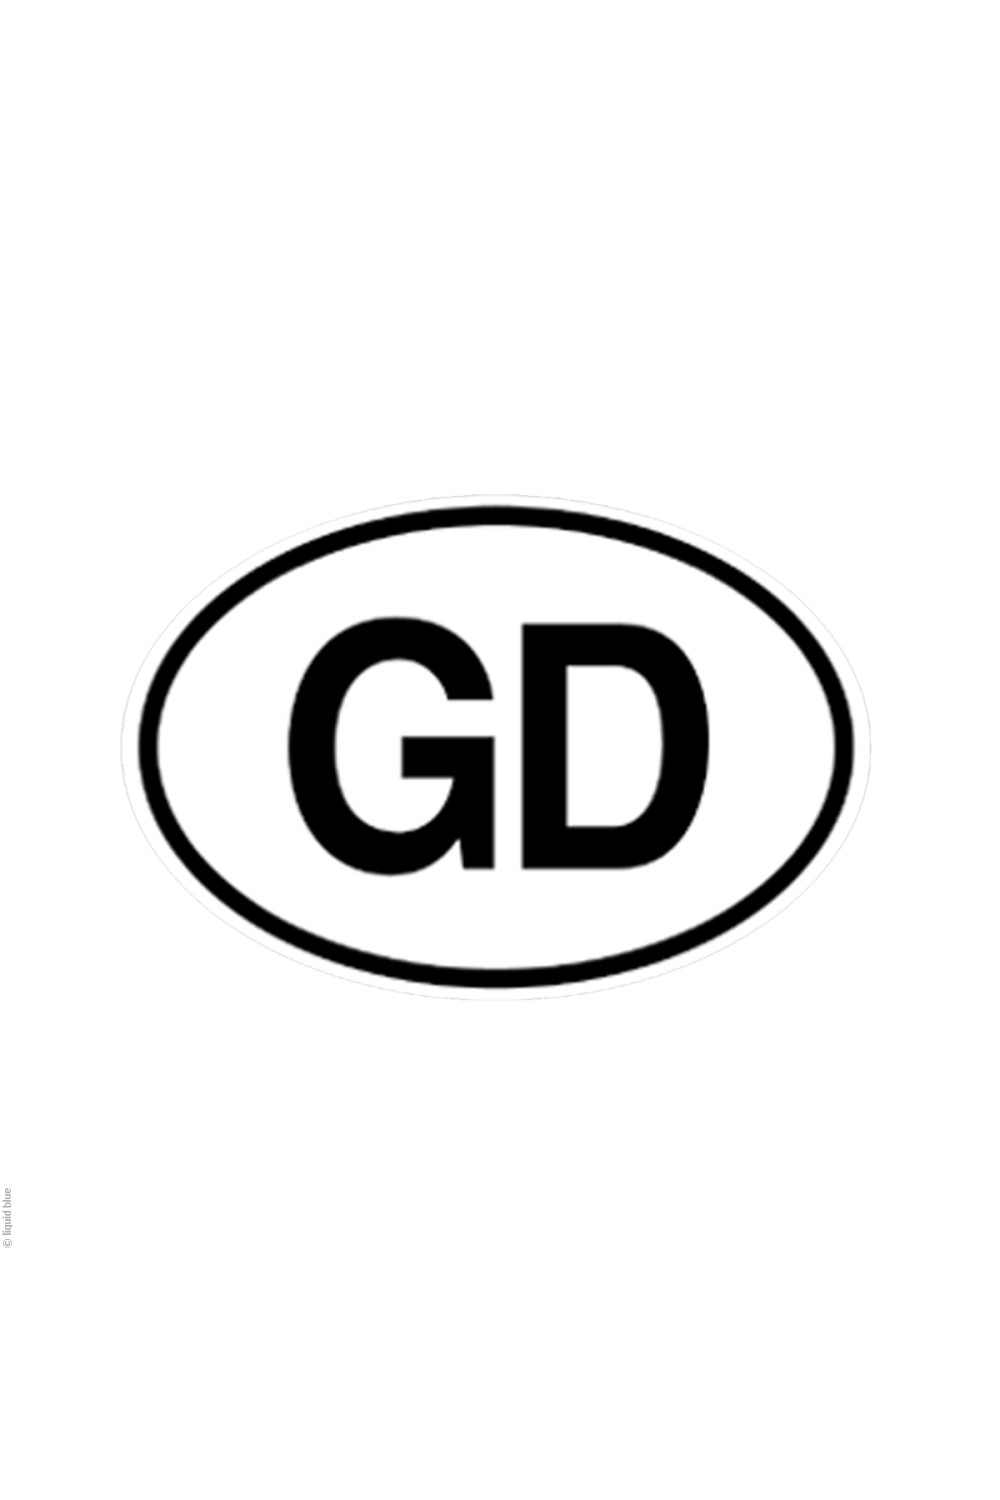 Grateful Dead "GD" Sticker 5.25"